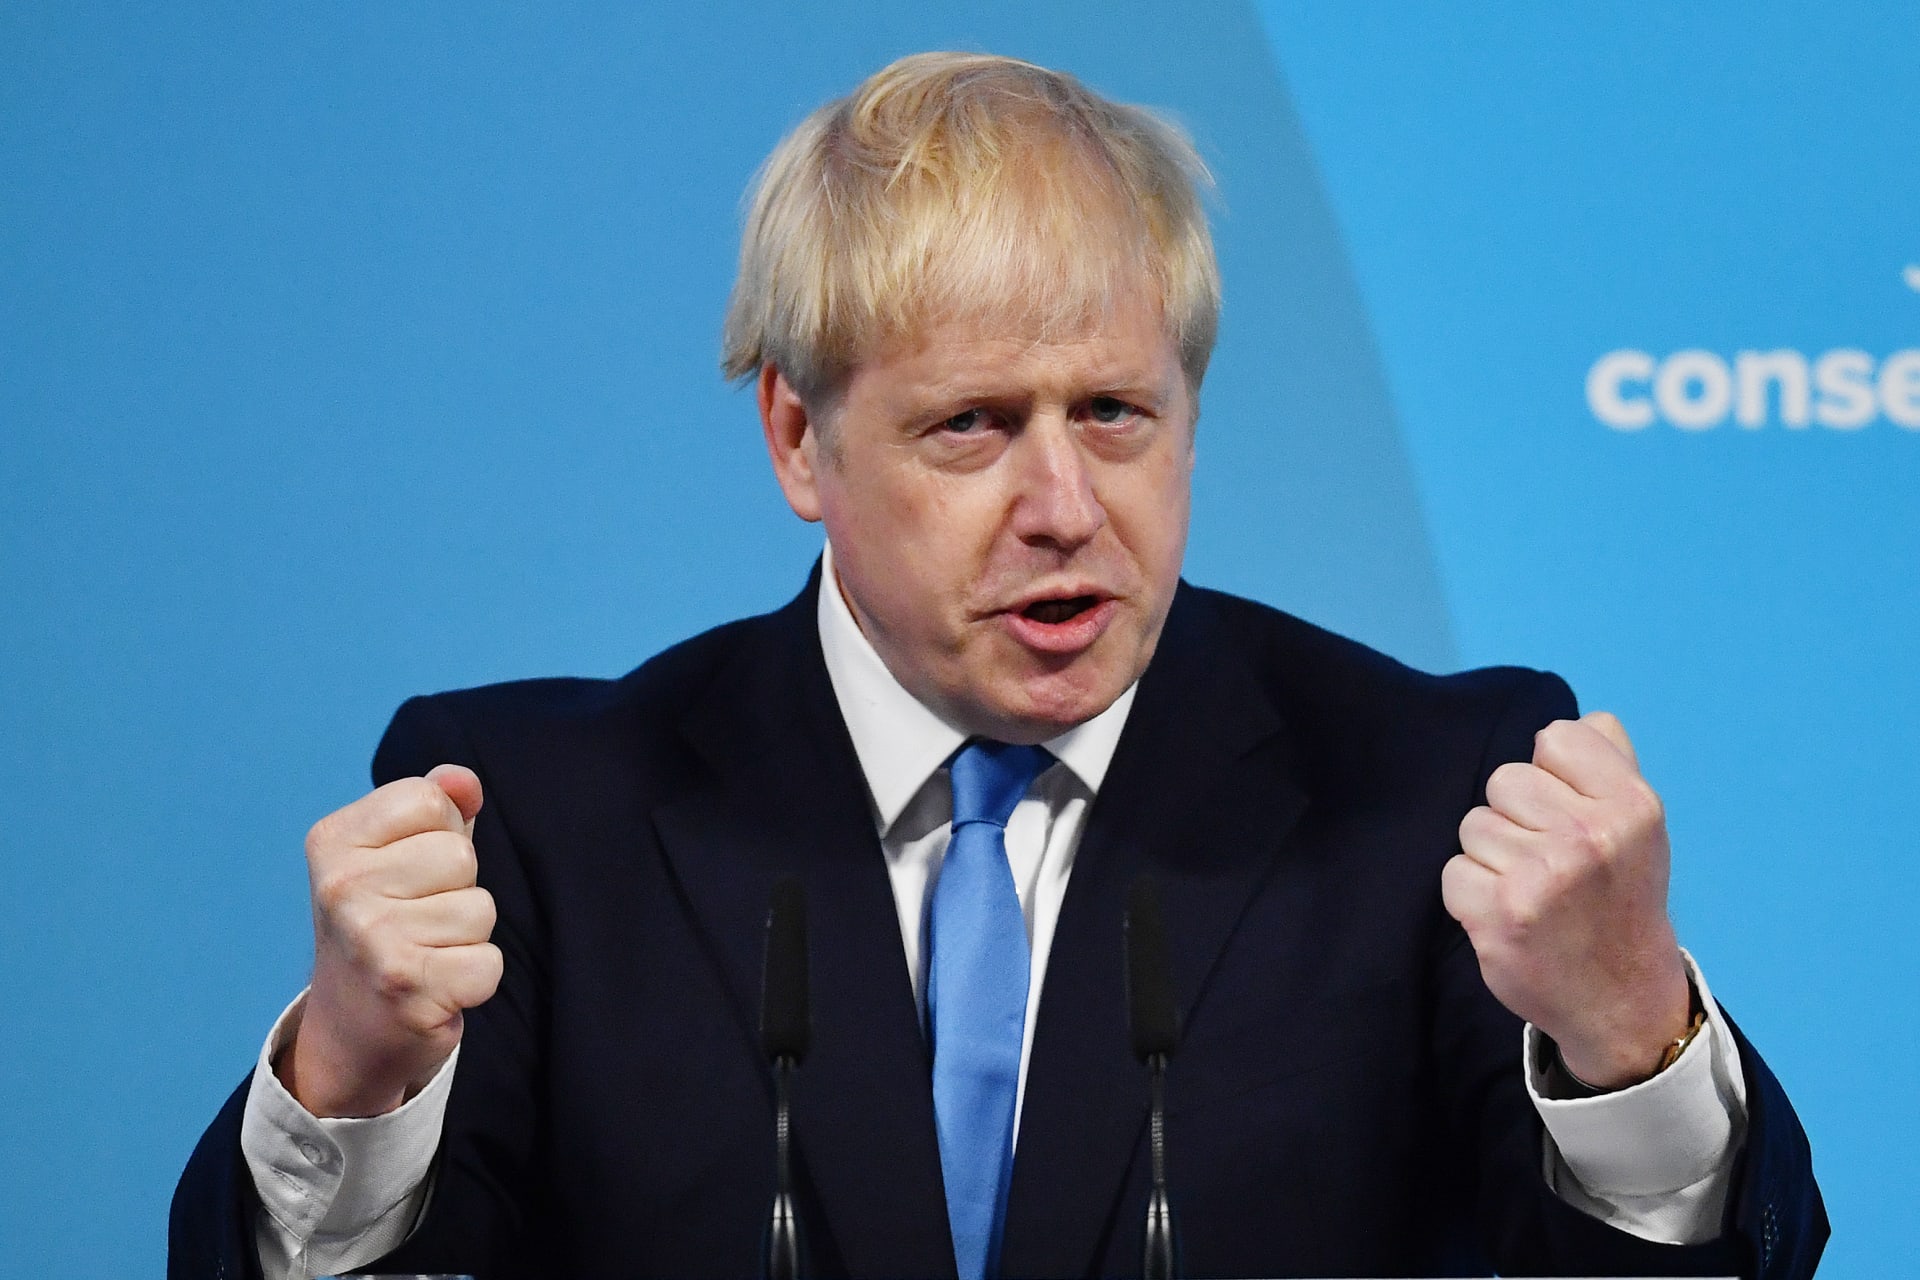 رئيس وزراء بريطانيا عن نتائج لقاح فيروس كورونا: "أخبار إيجابية جدا"